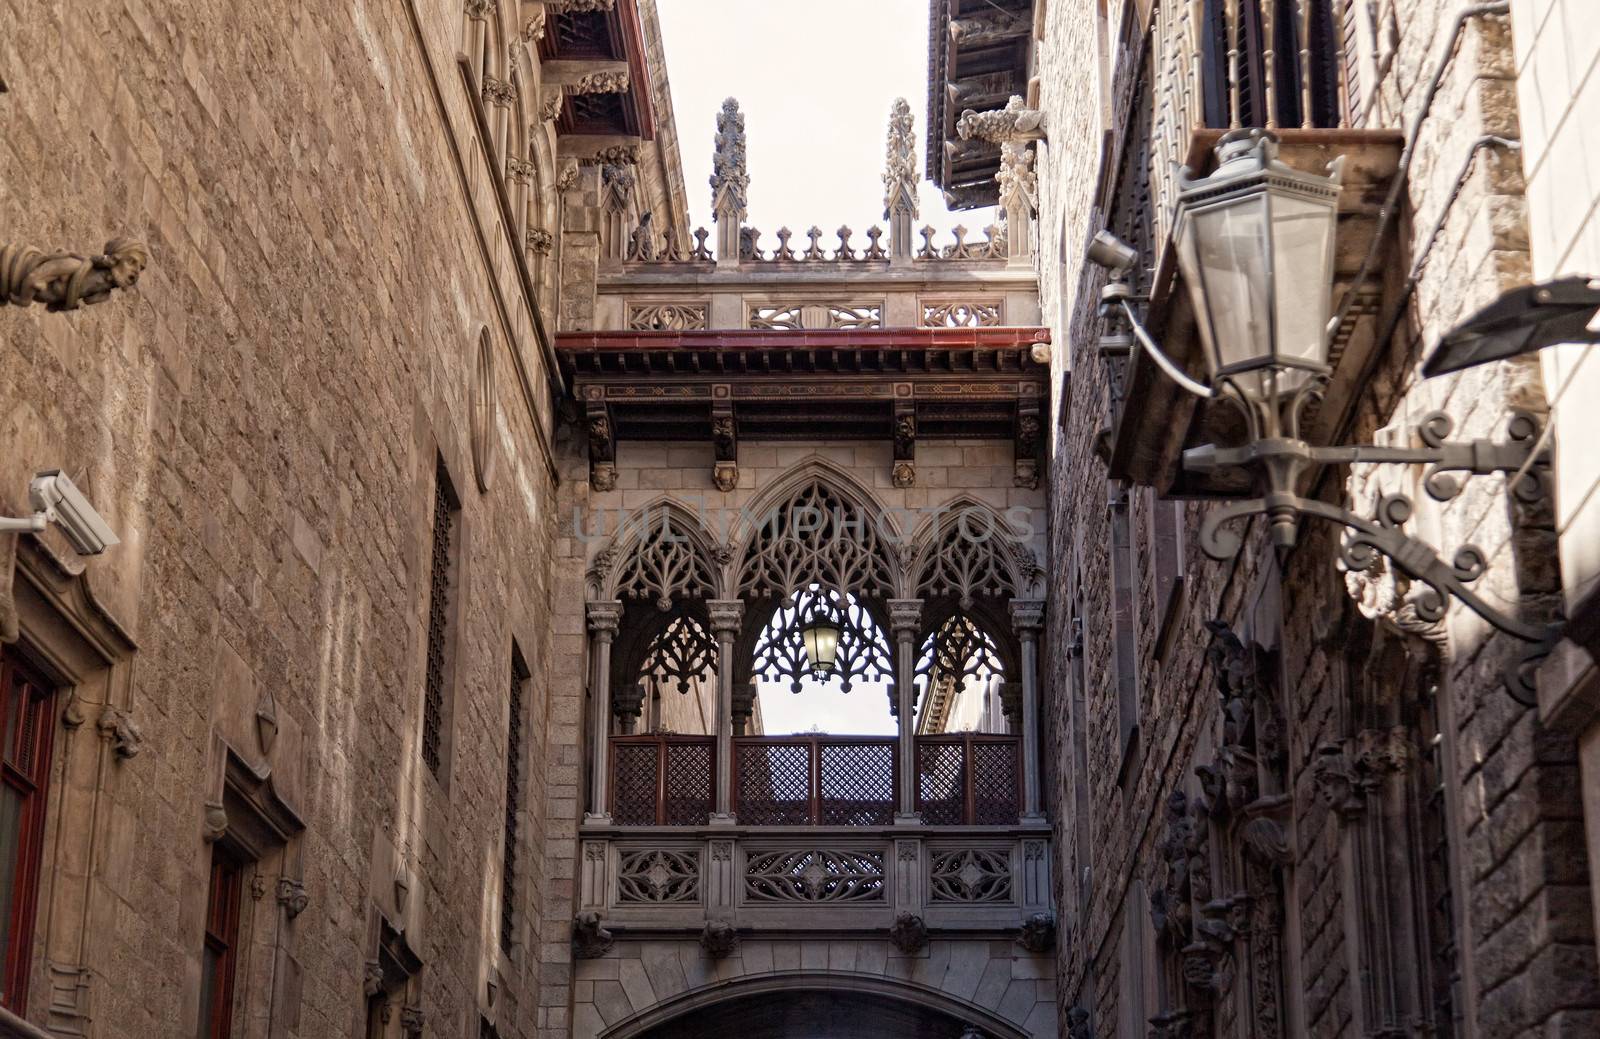 Gothic quarter in Barcelona, Spain by elena_shchipkova